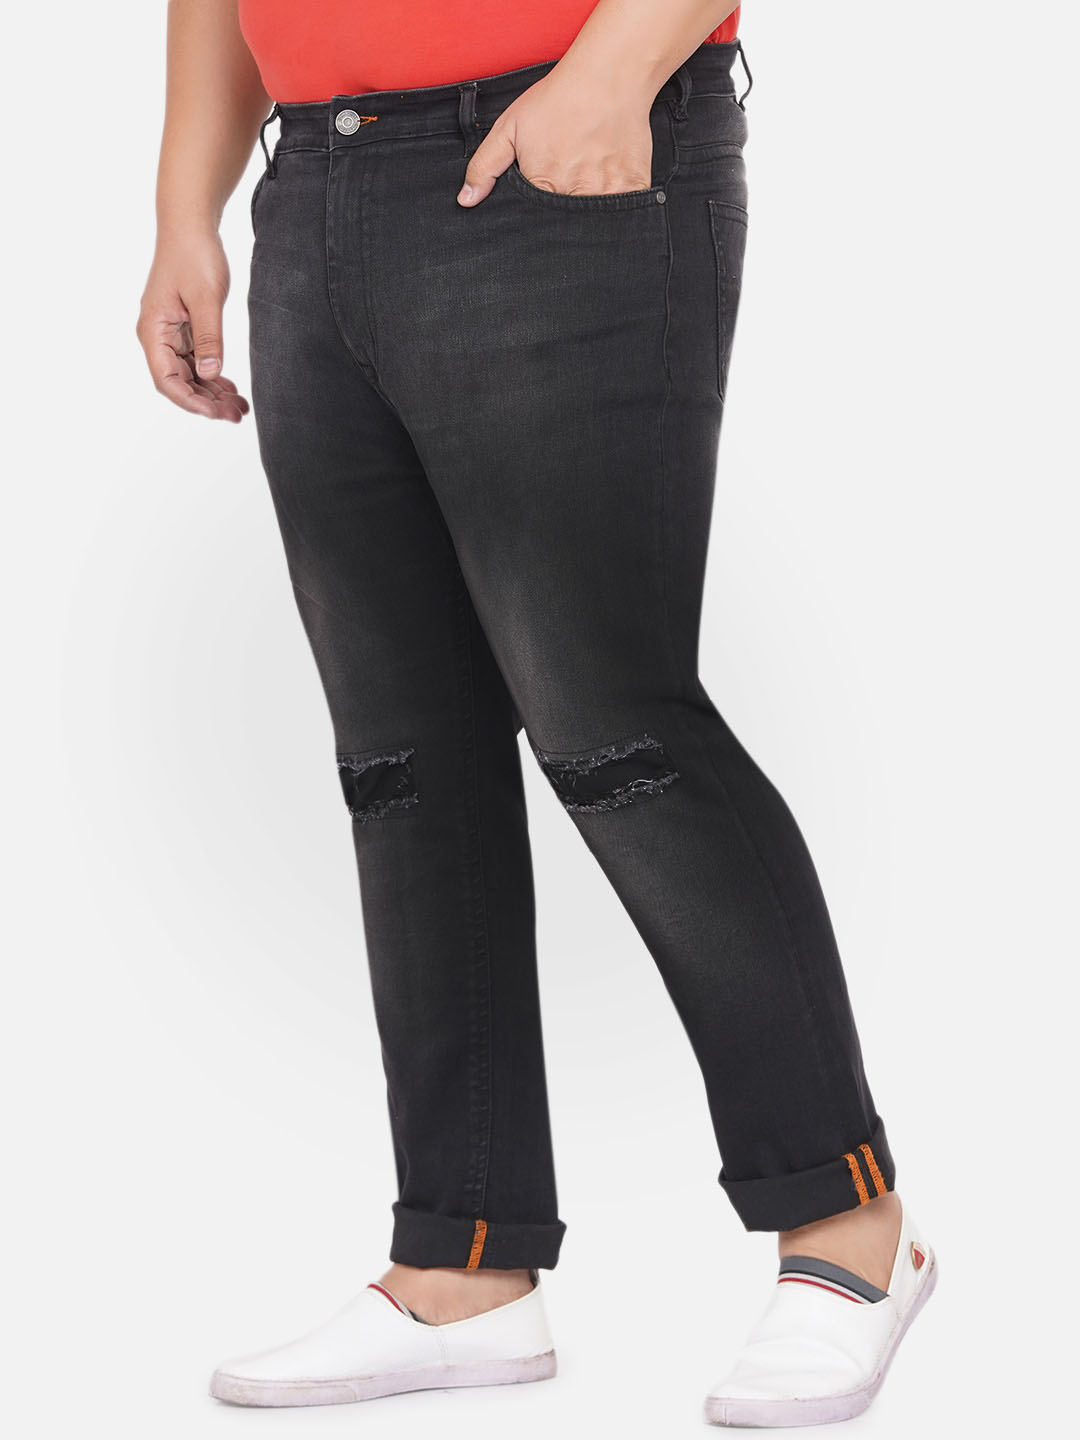 bottomwear/jeans/EJPJ25060/ejpj25060-4.jpg